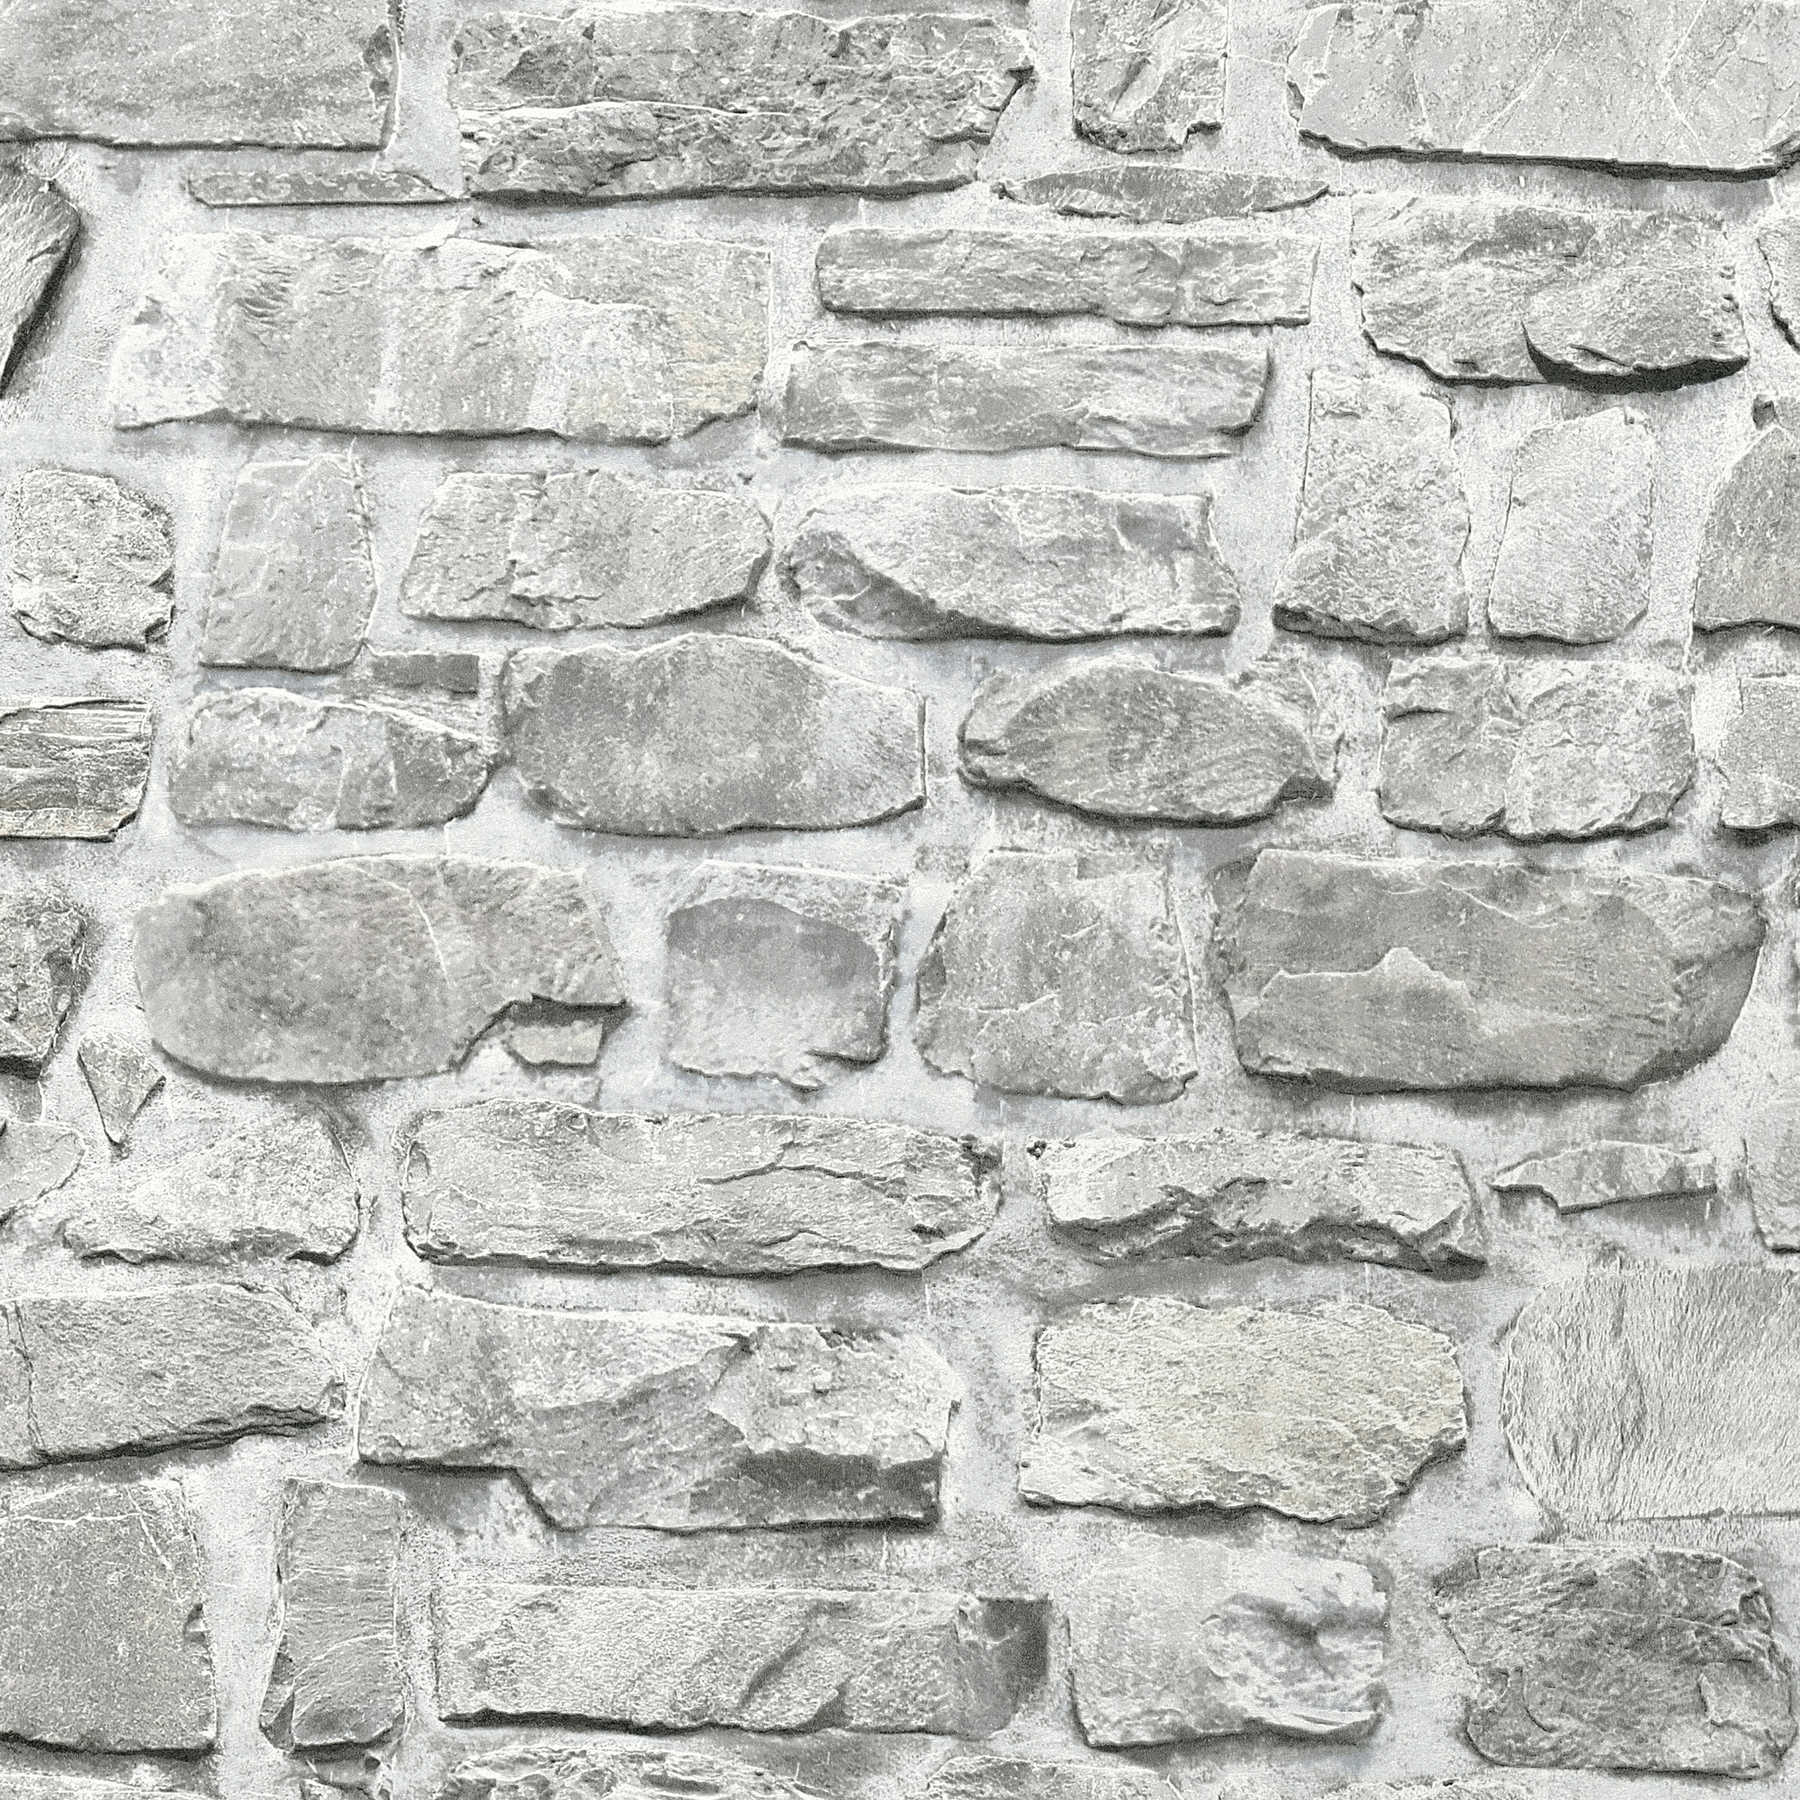             Papier peint imitation pierre avec mur en pierre naturelle - gris, blanc
        